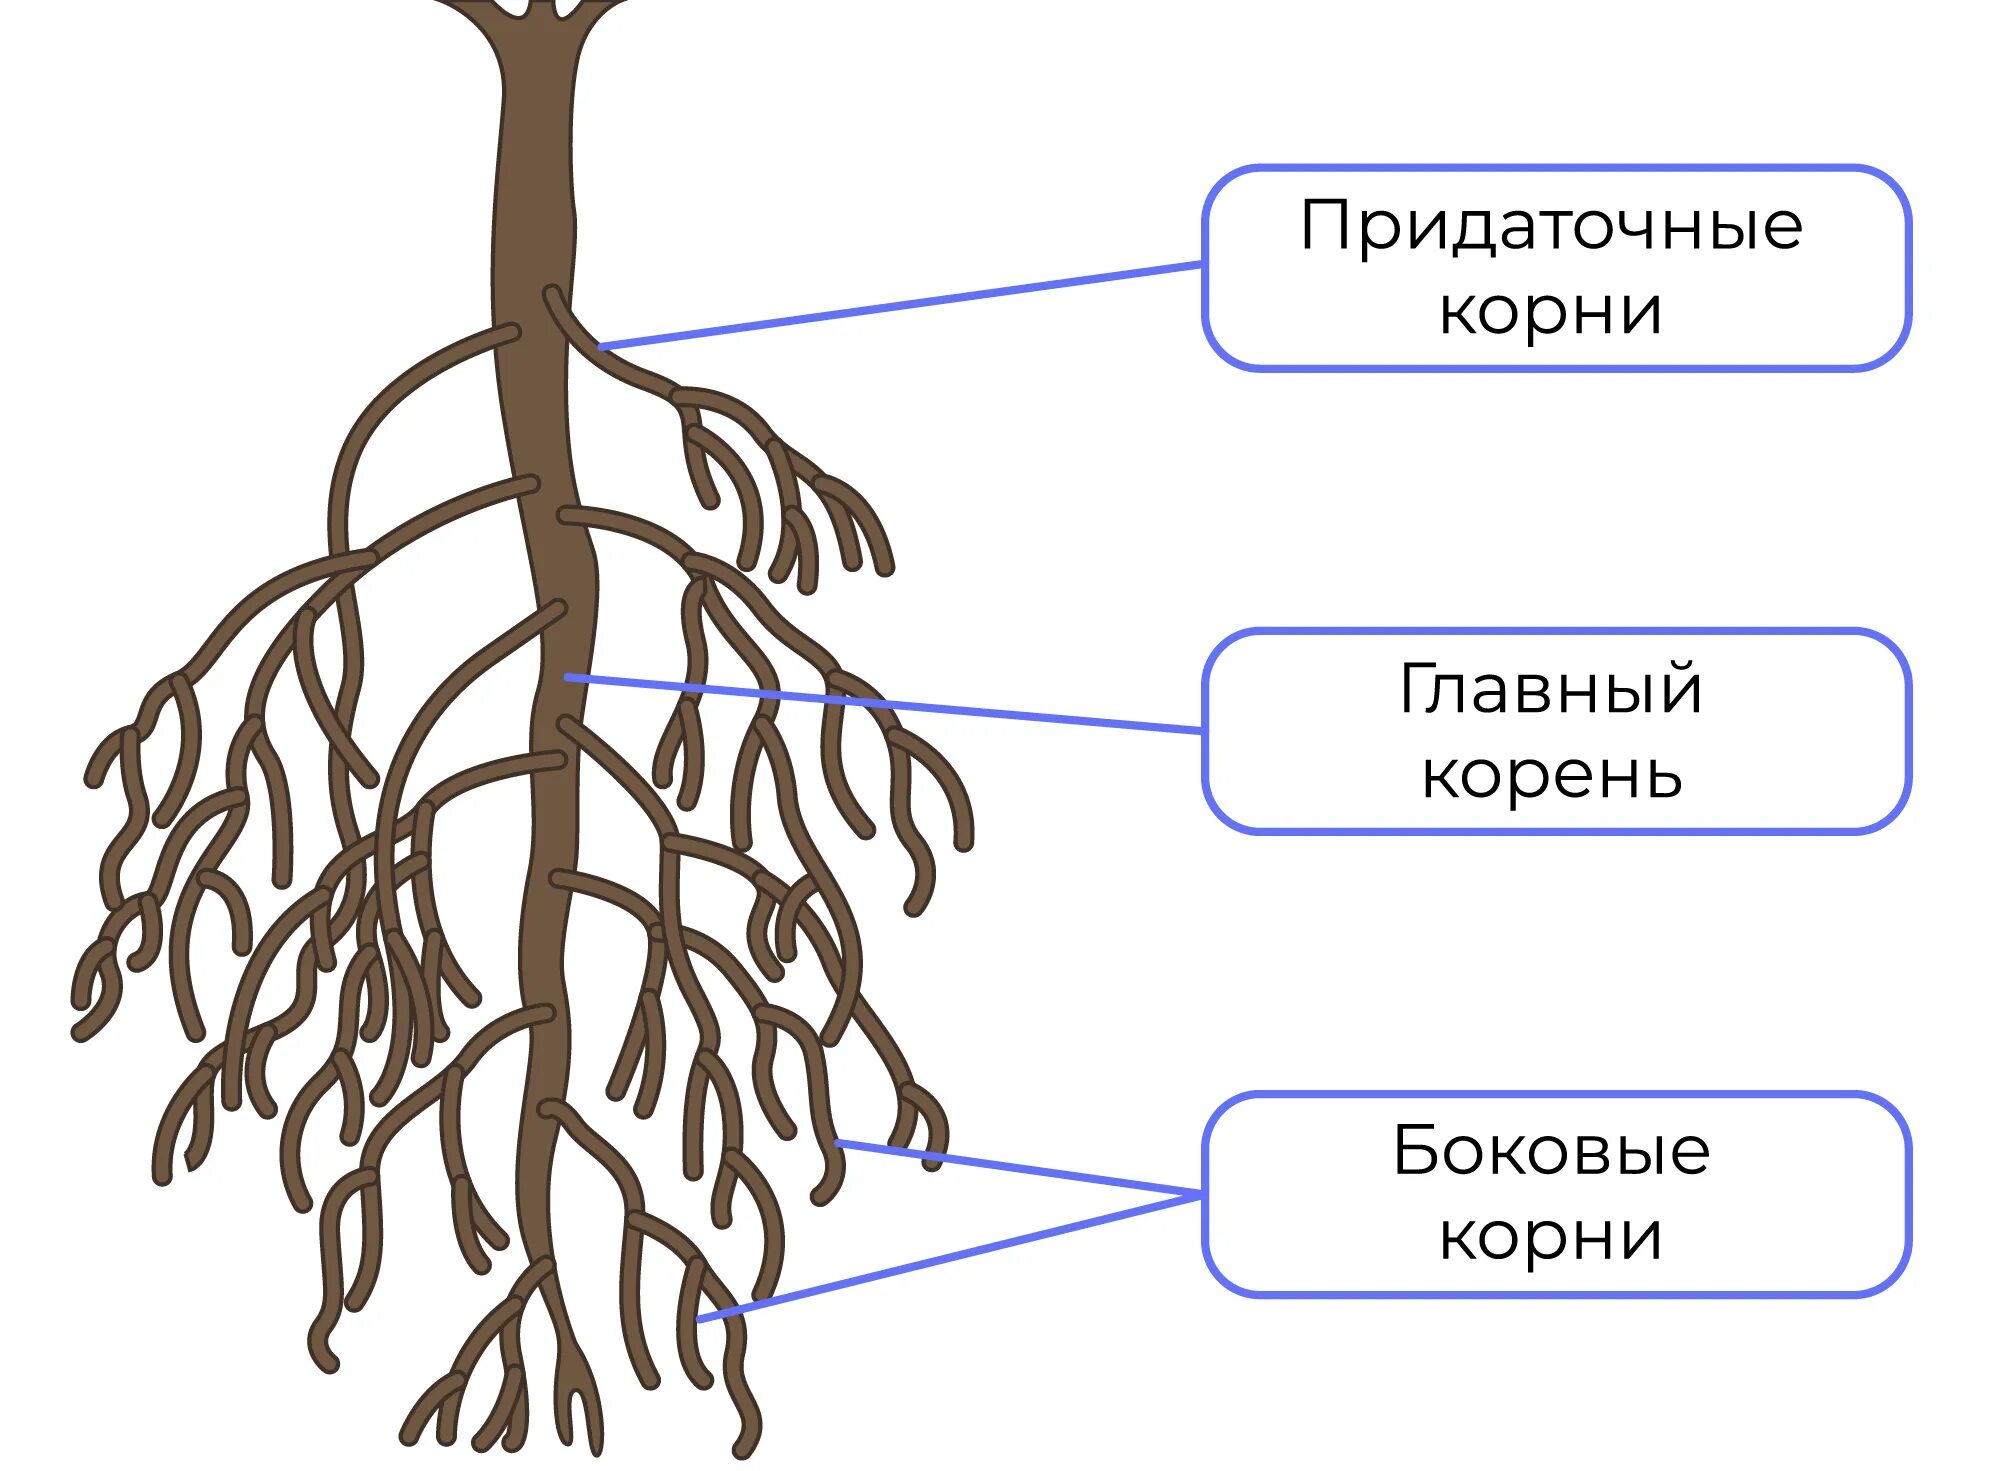 Придаточные корни есть. Боковые корни. Боковые и придаточные корни. Придаточные боковые и главный корень. Корень и корневая система.